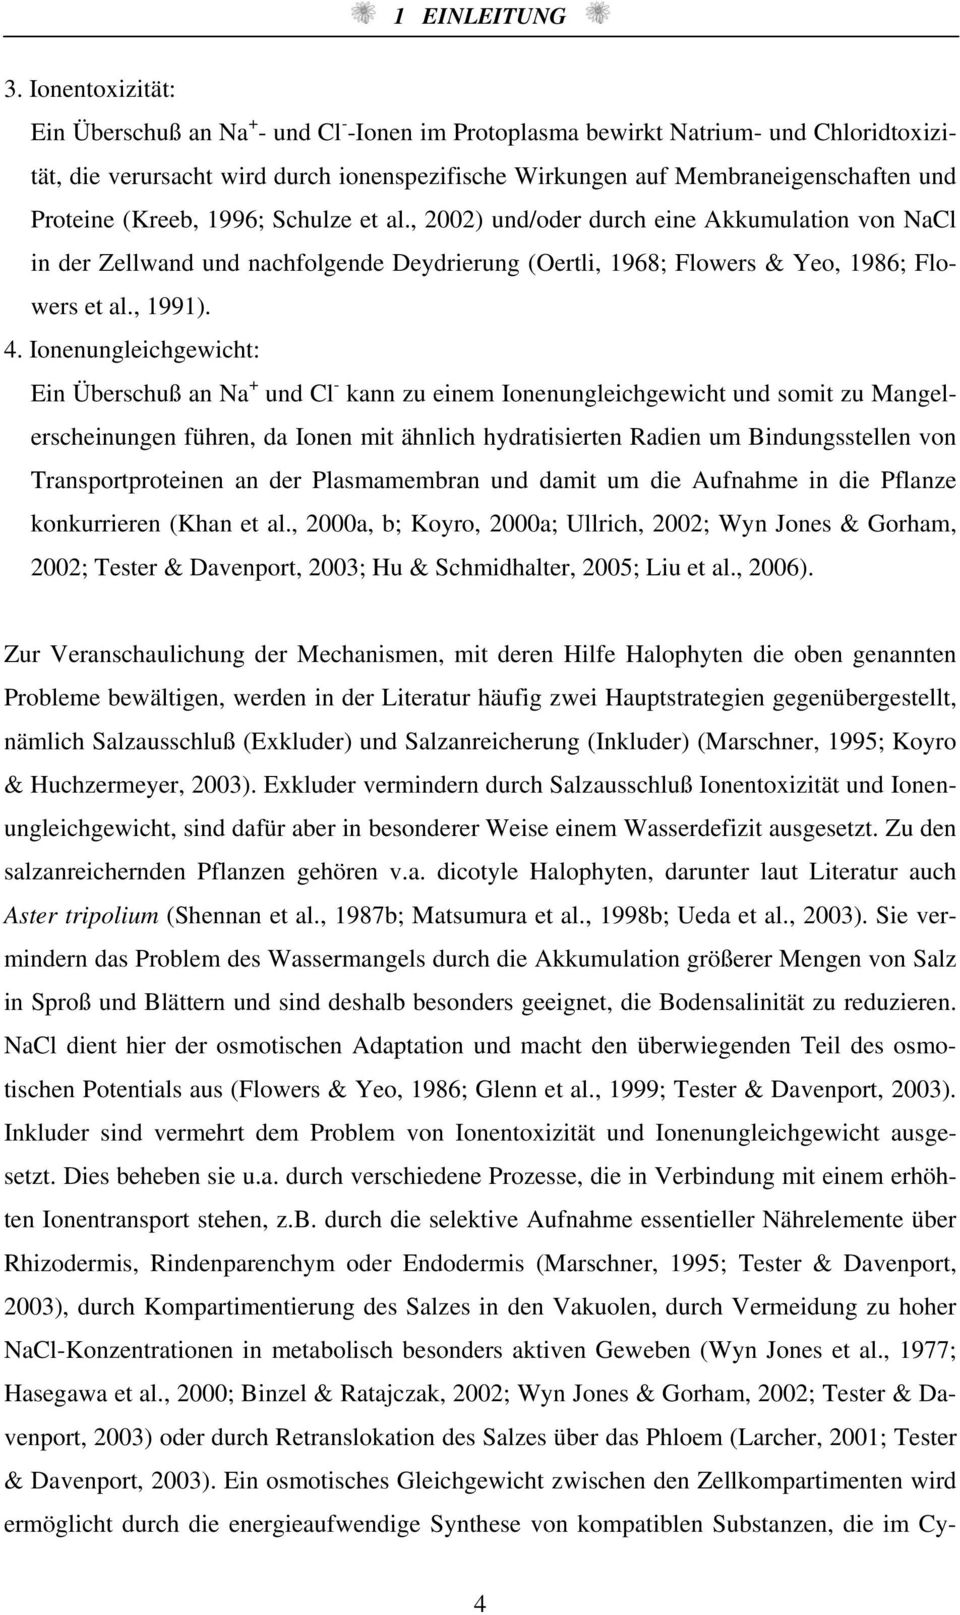 Shulze et l., 22) und/oder durh eine Akkumultion von NCl in der Zellwnd und nhfolgende Deydrierung (Oertli, 1968; Flowers & Yeo, 1986; Flowers et l., 1991). 4.